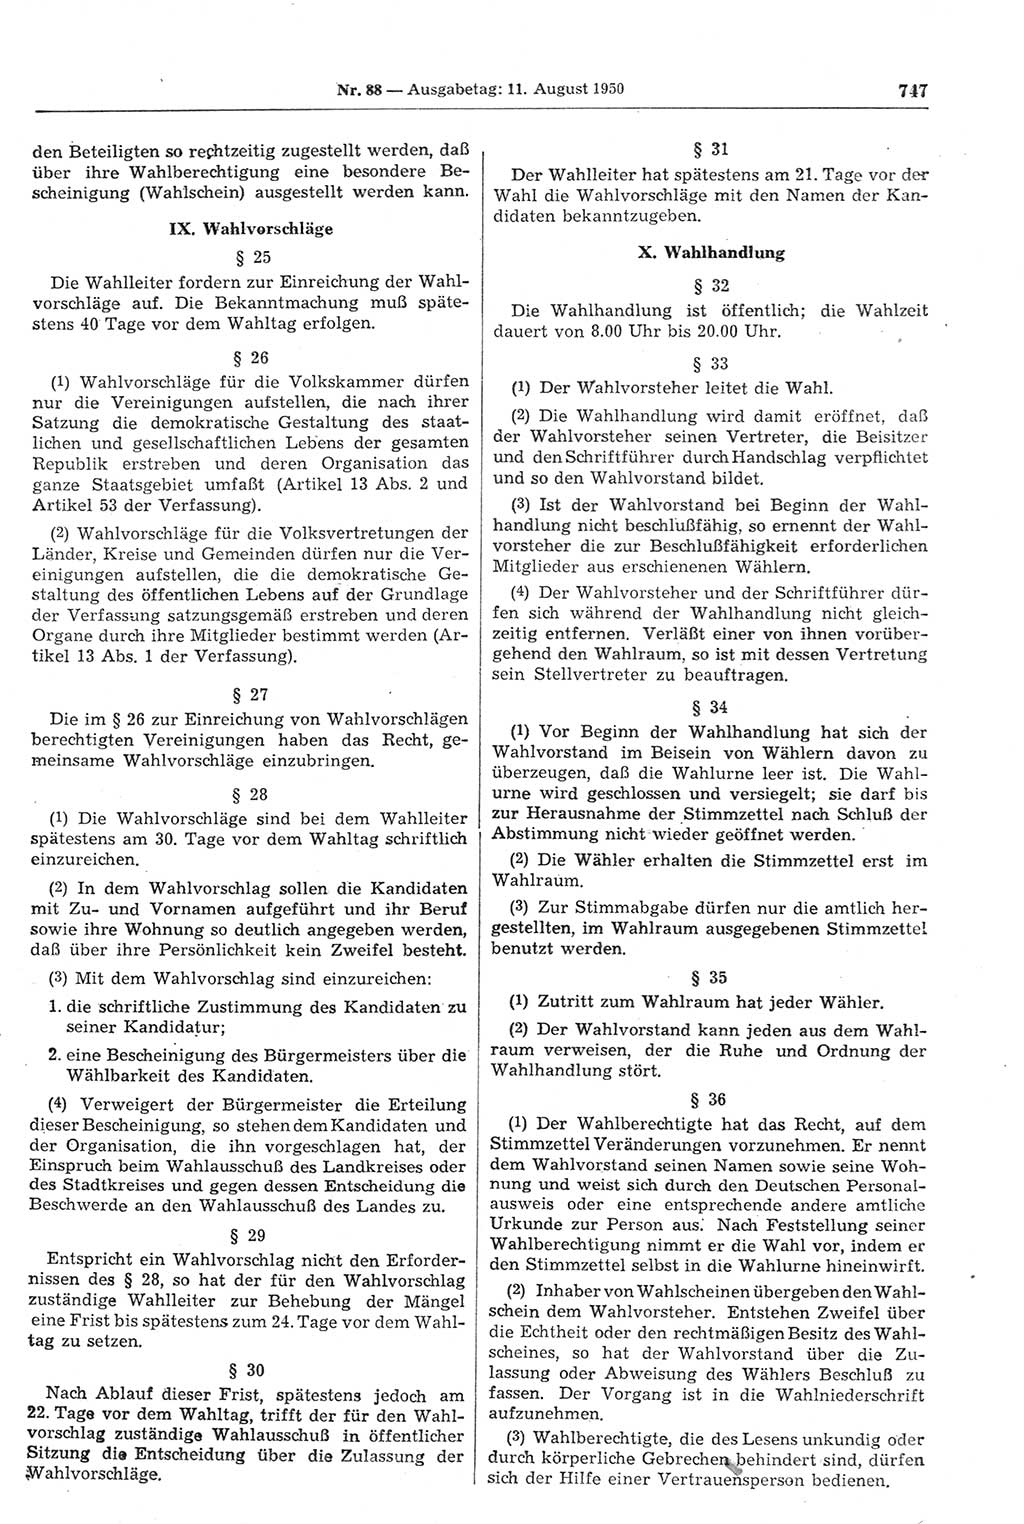 Gesetzblatt (GBl.) der Deutschen Demokratischen Republik (DDR) 1950, Seite 747 (GBl. DDR 1950, S. 747)